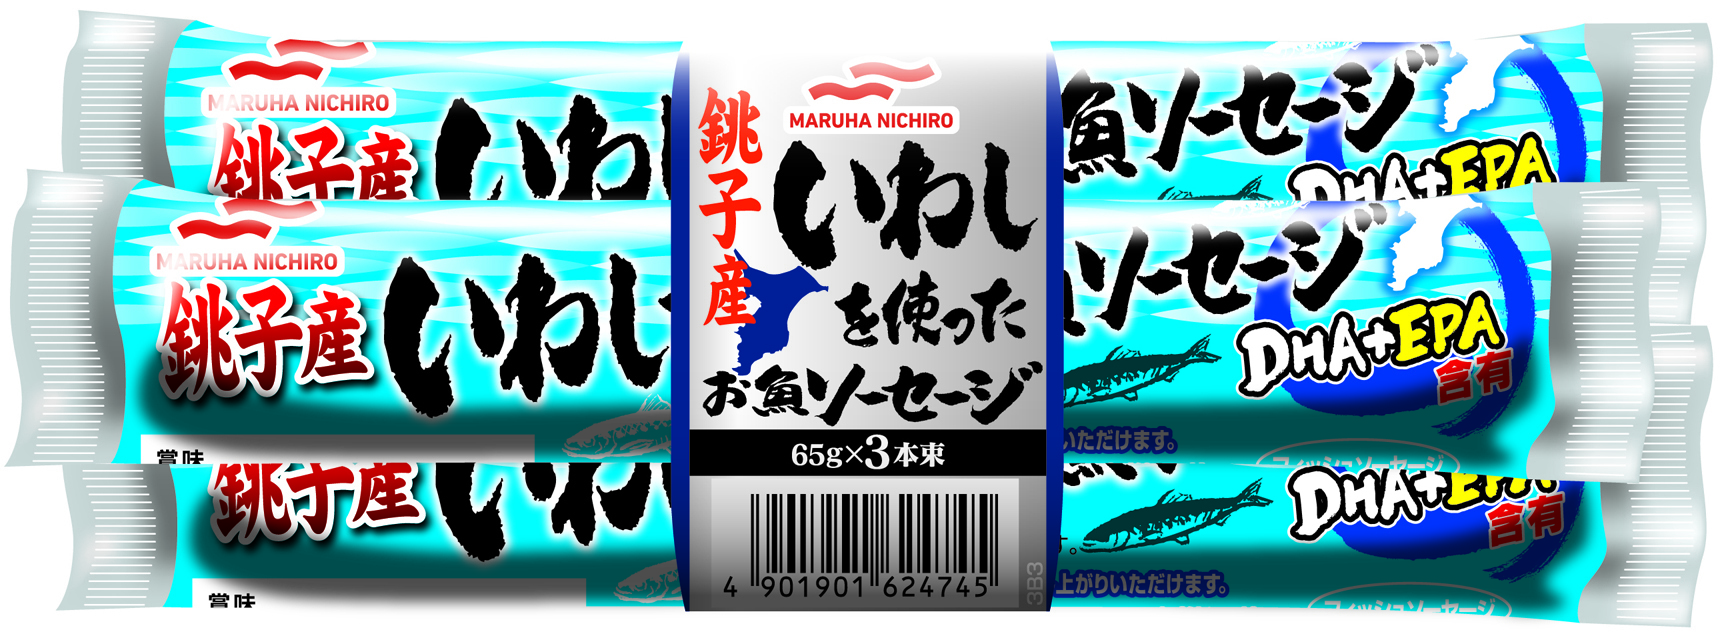 4901901624745銚子産いわしを使ったお魚ソーセージ.jpg